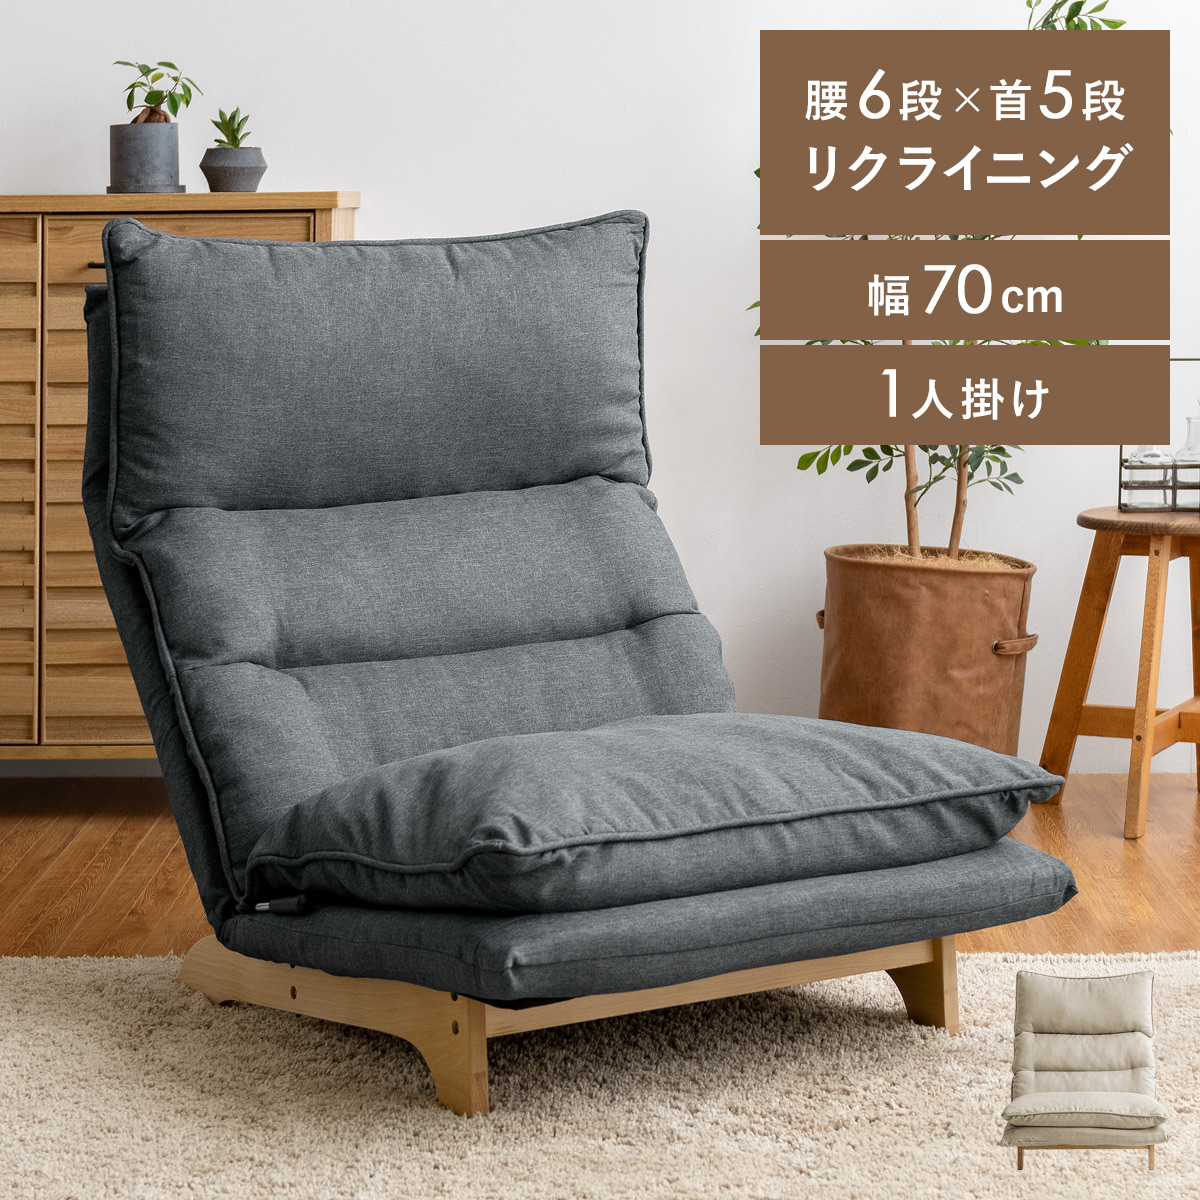 熱い販売 3way クッションソファ 座椅子ソファ ダークグレー×ベージュ 北欧 洗濯可能 ローソファ/フロアソファ